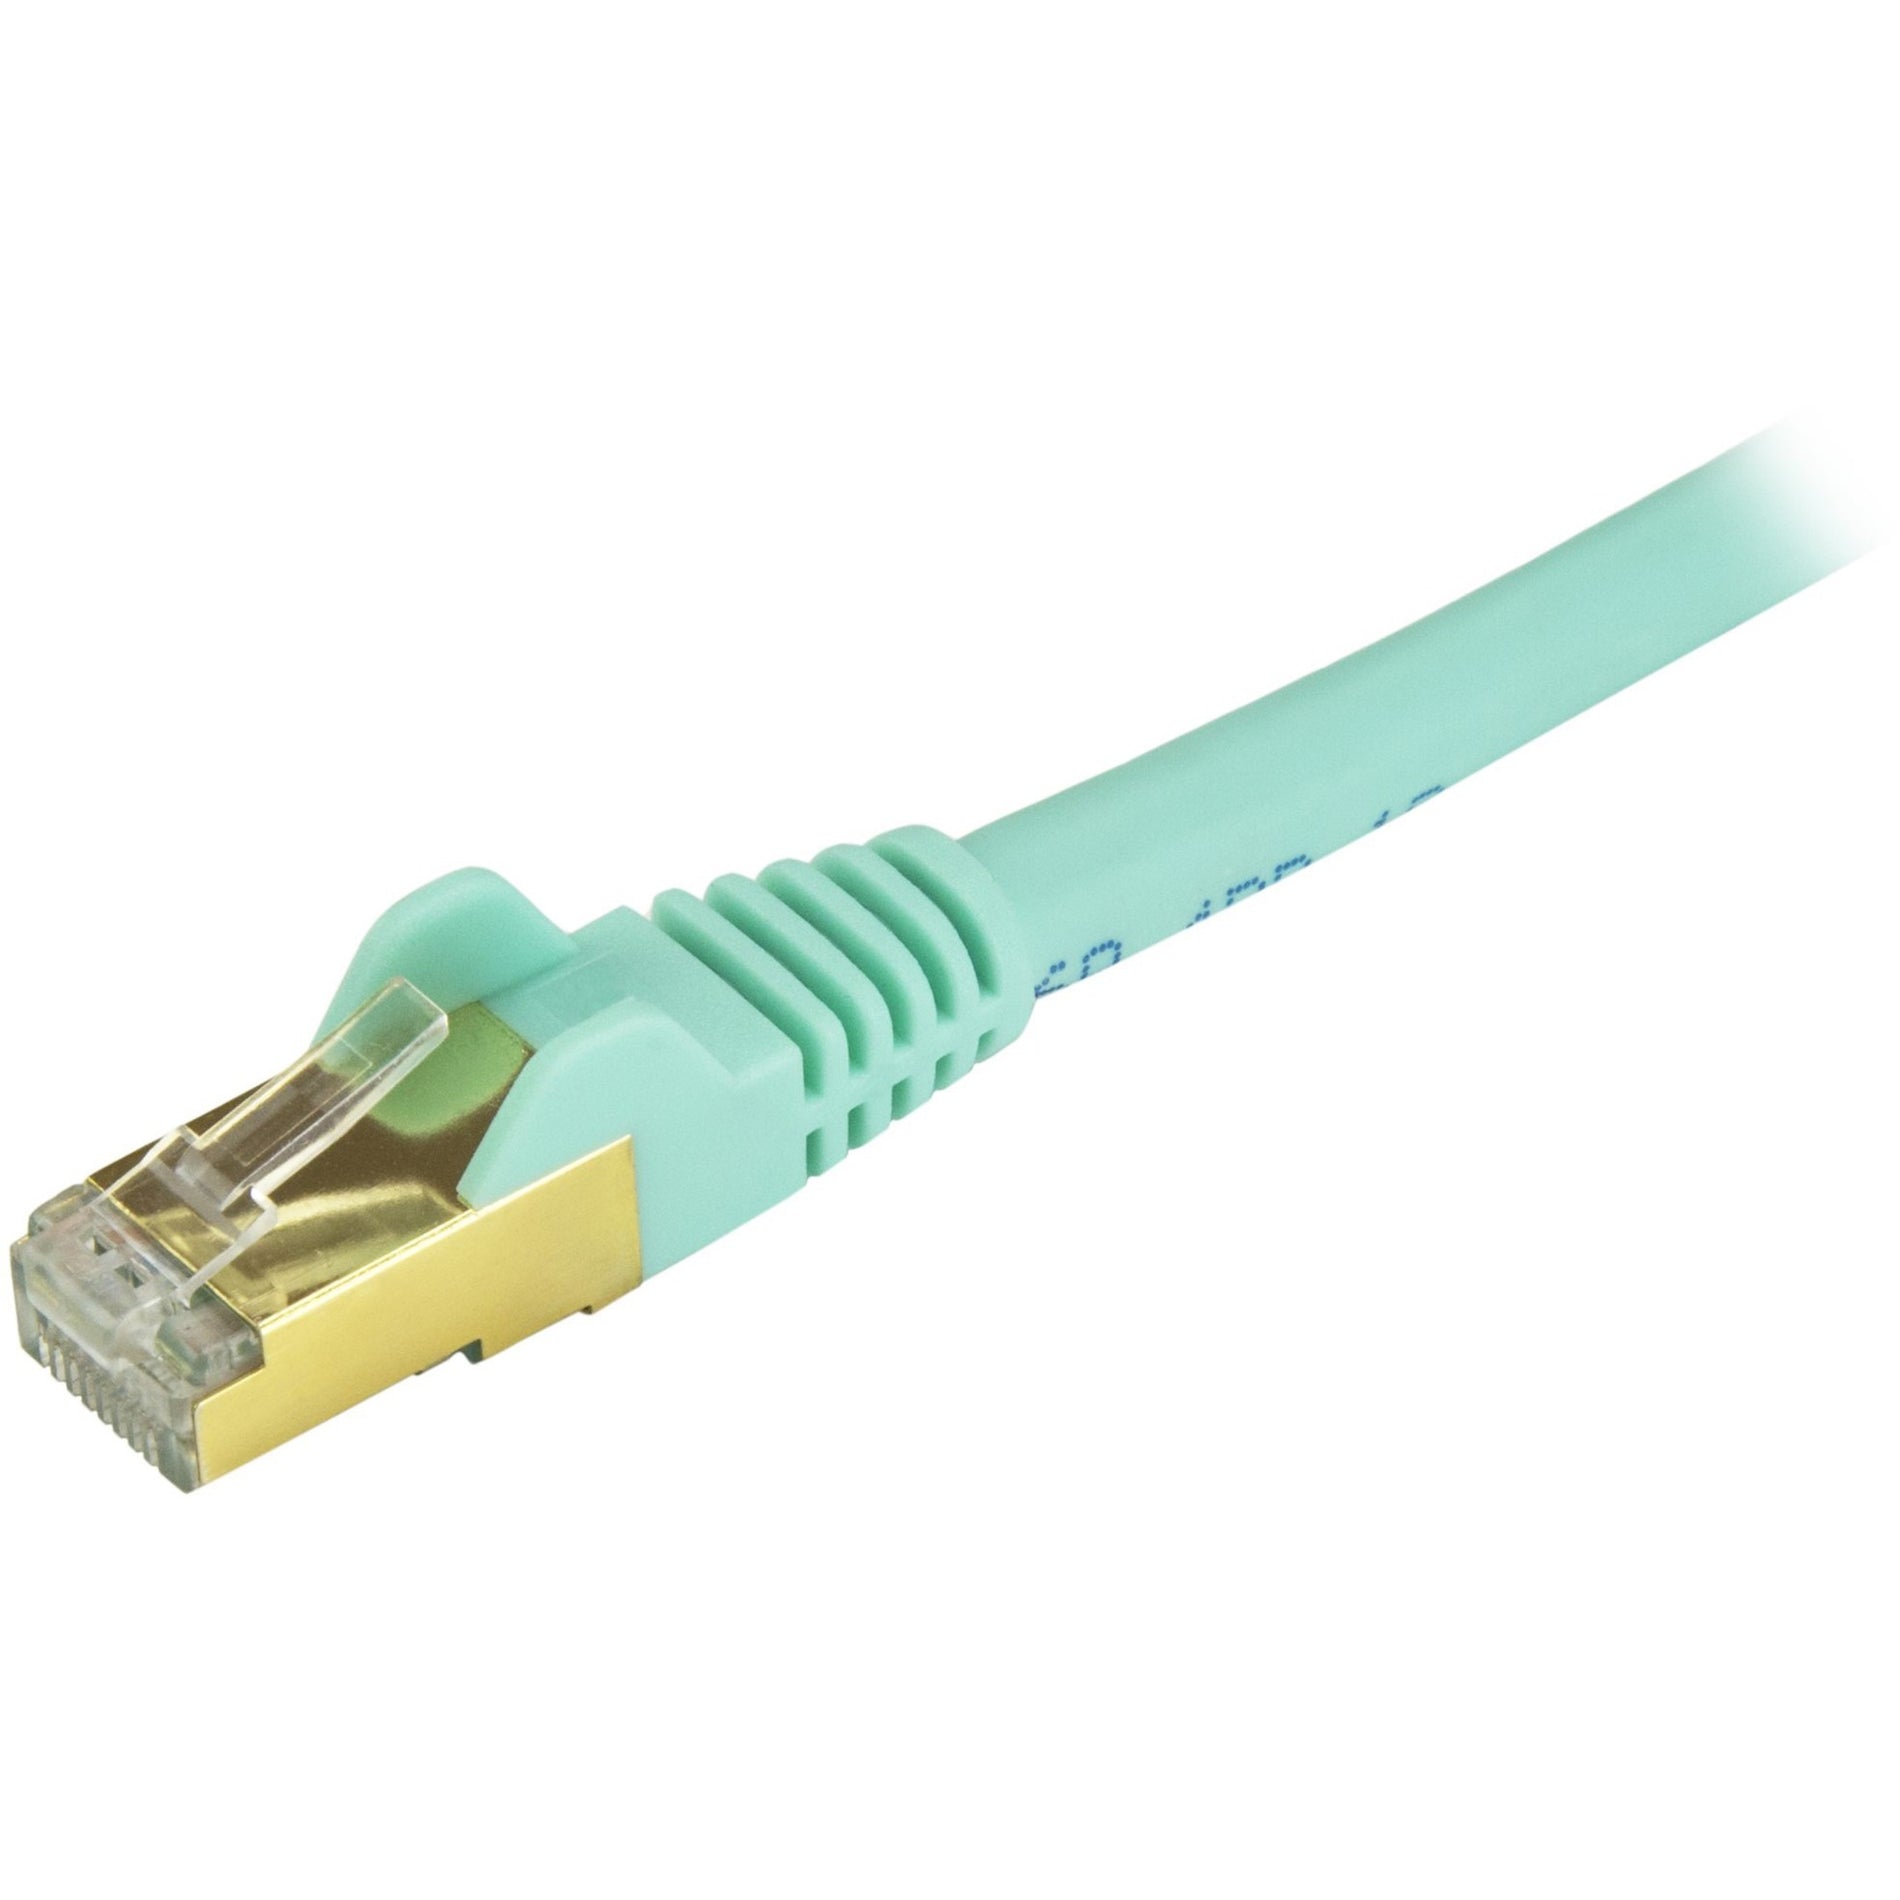 StarTech.com C6ASPAT1AQ Cat6a Ethernet Patch Cable - Shielded (STP) - 1 ft., Aqua, Short Ethernet Cord